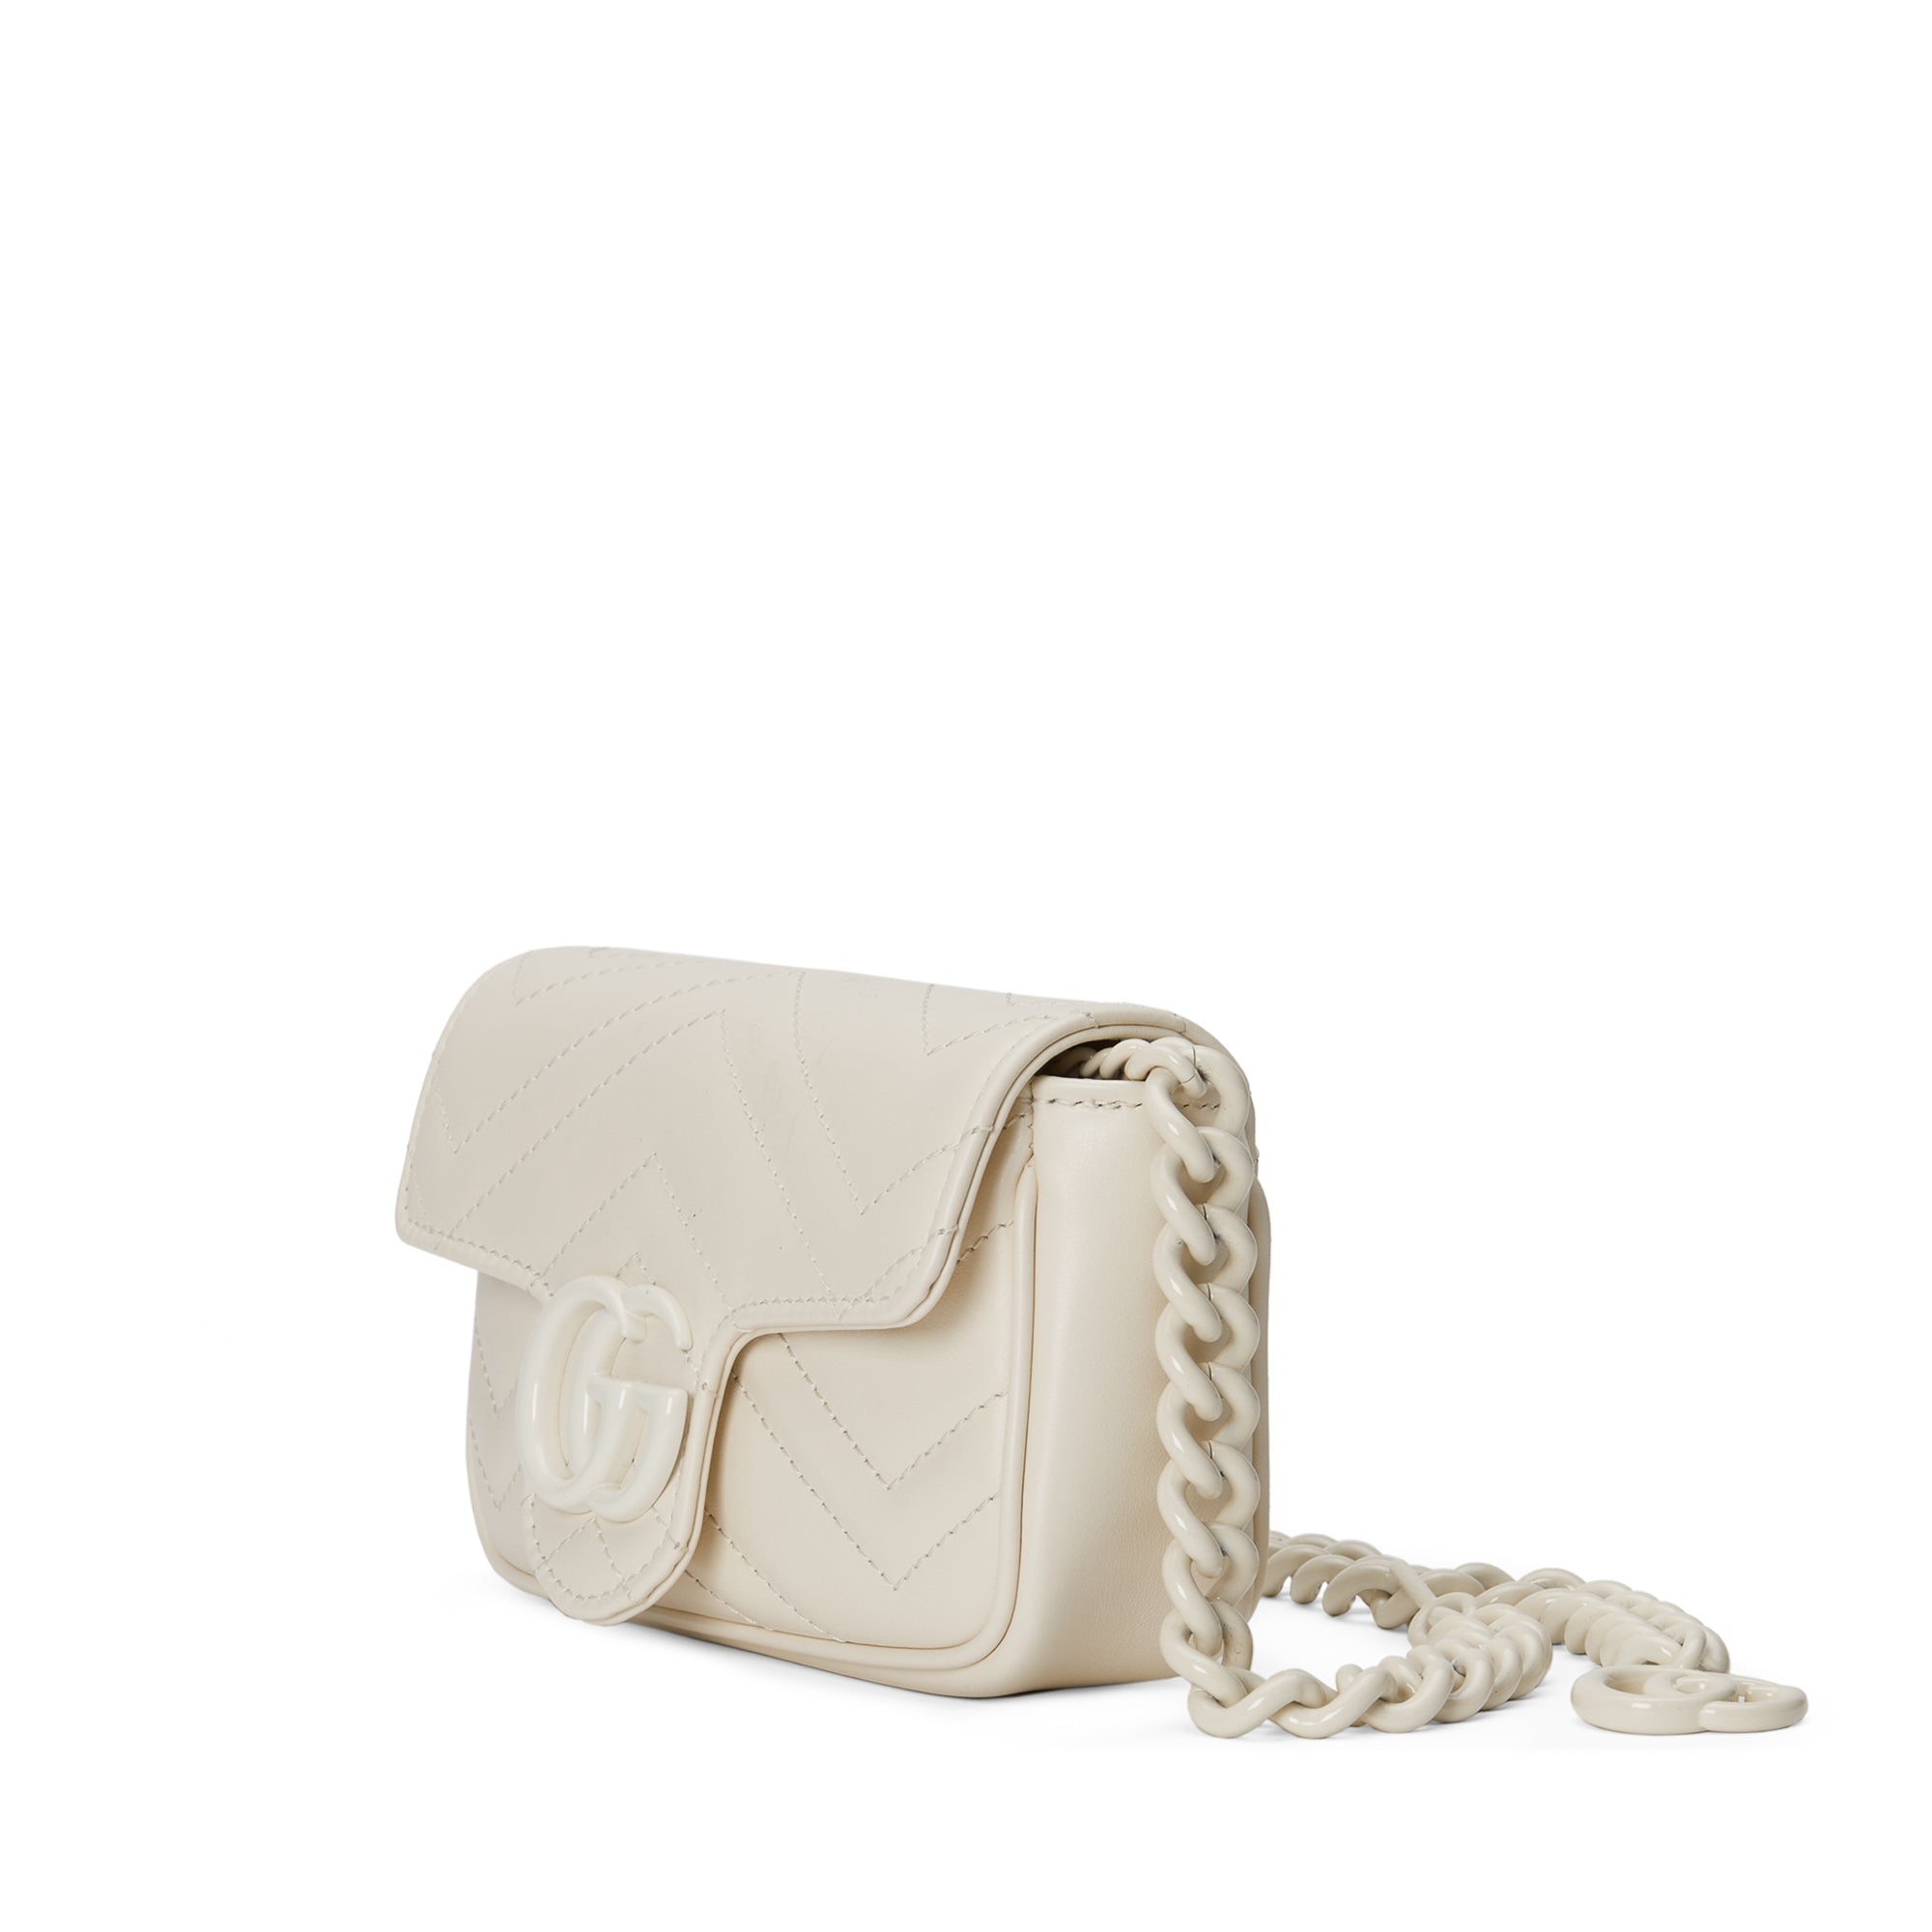 GG Marmont Velvet Belt Bag – AMUSED Co